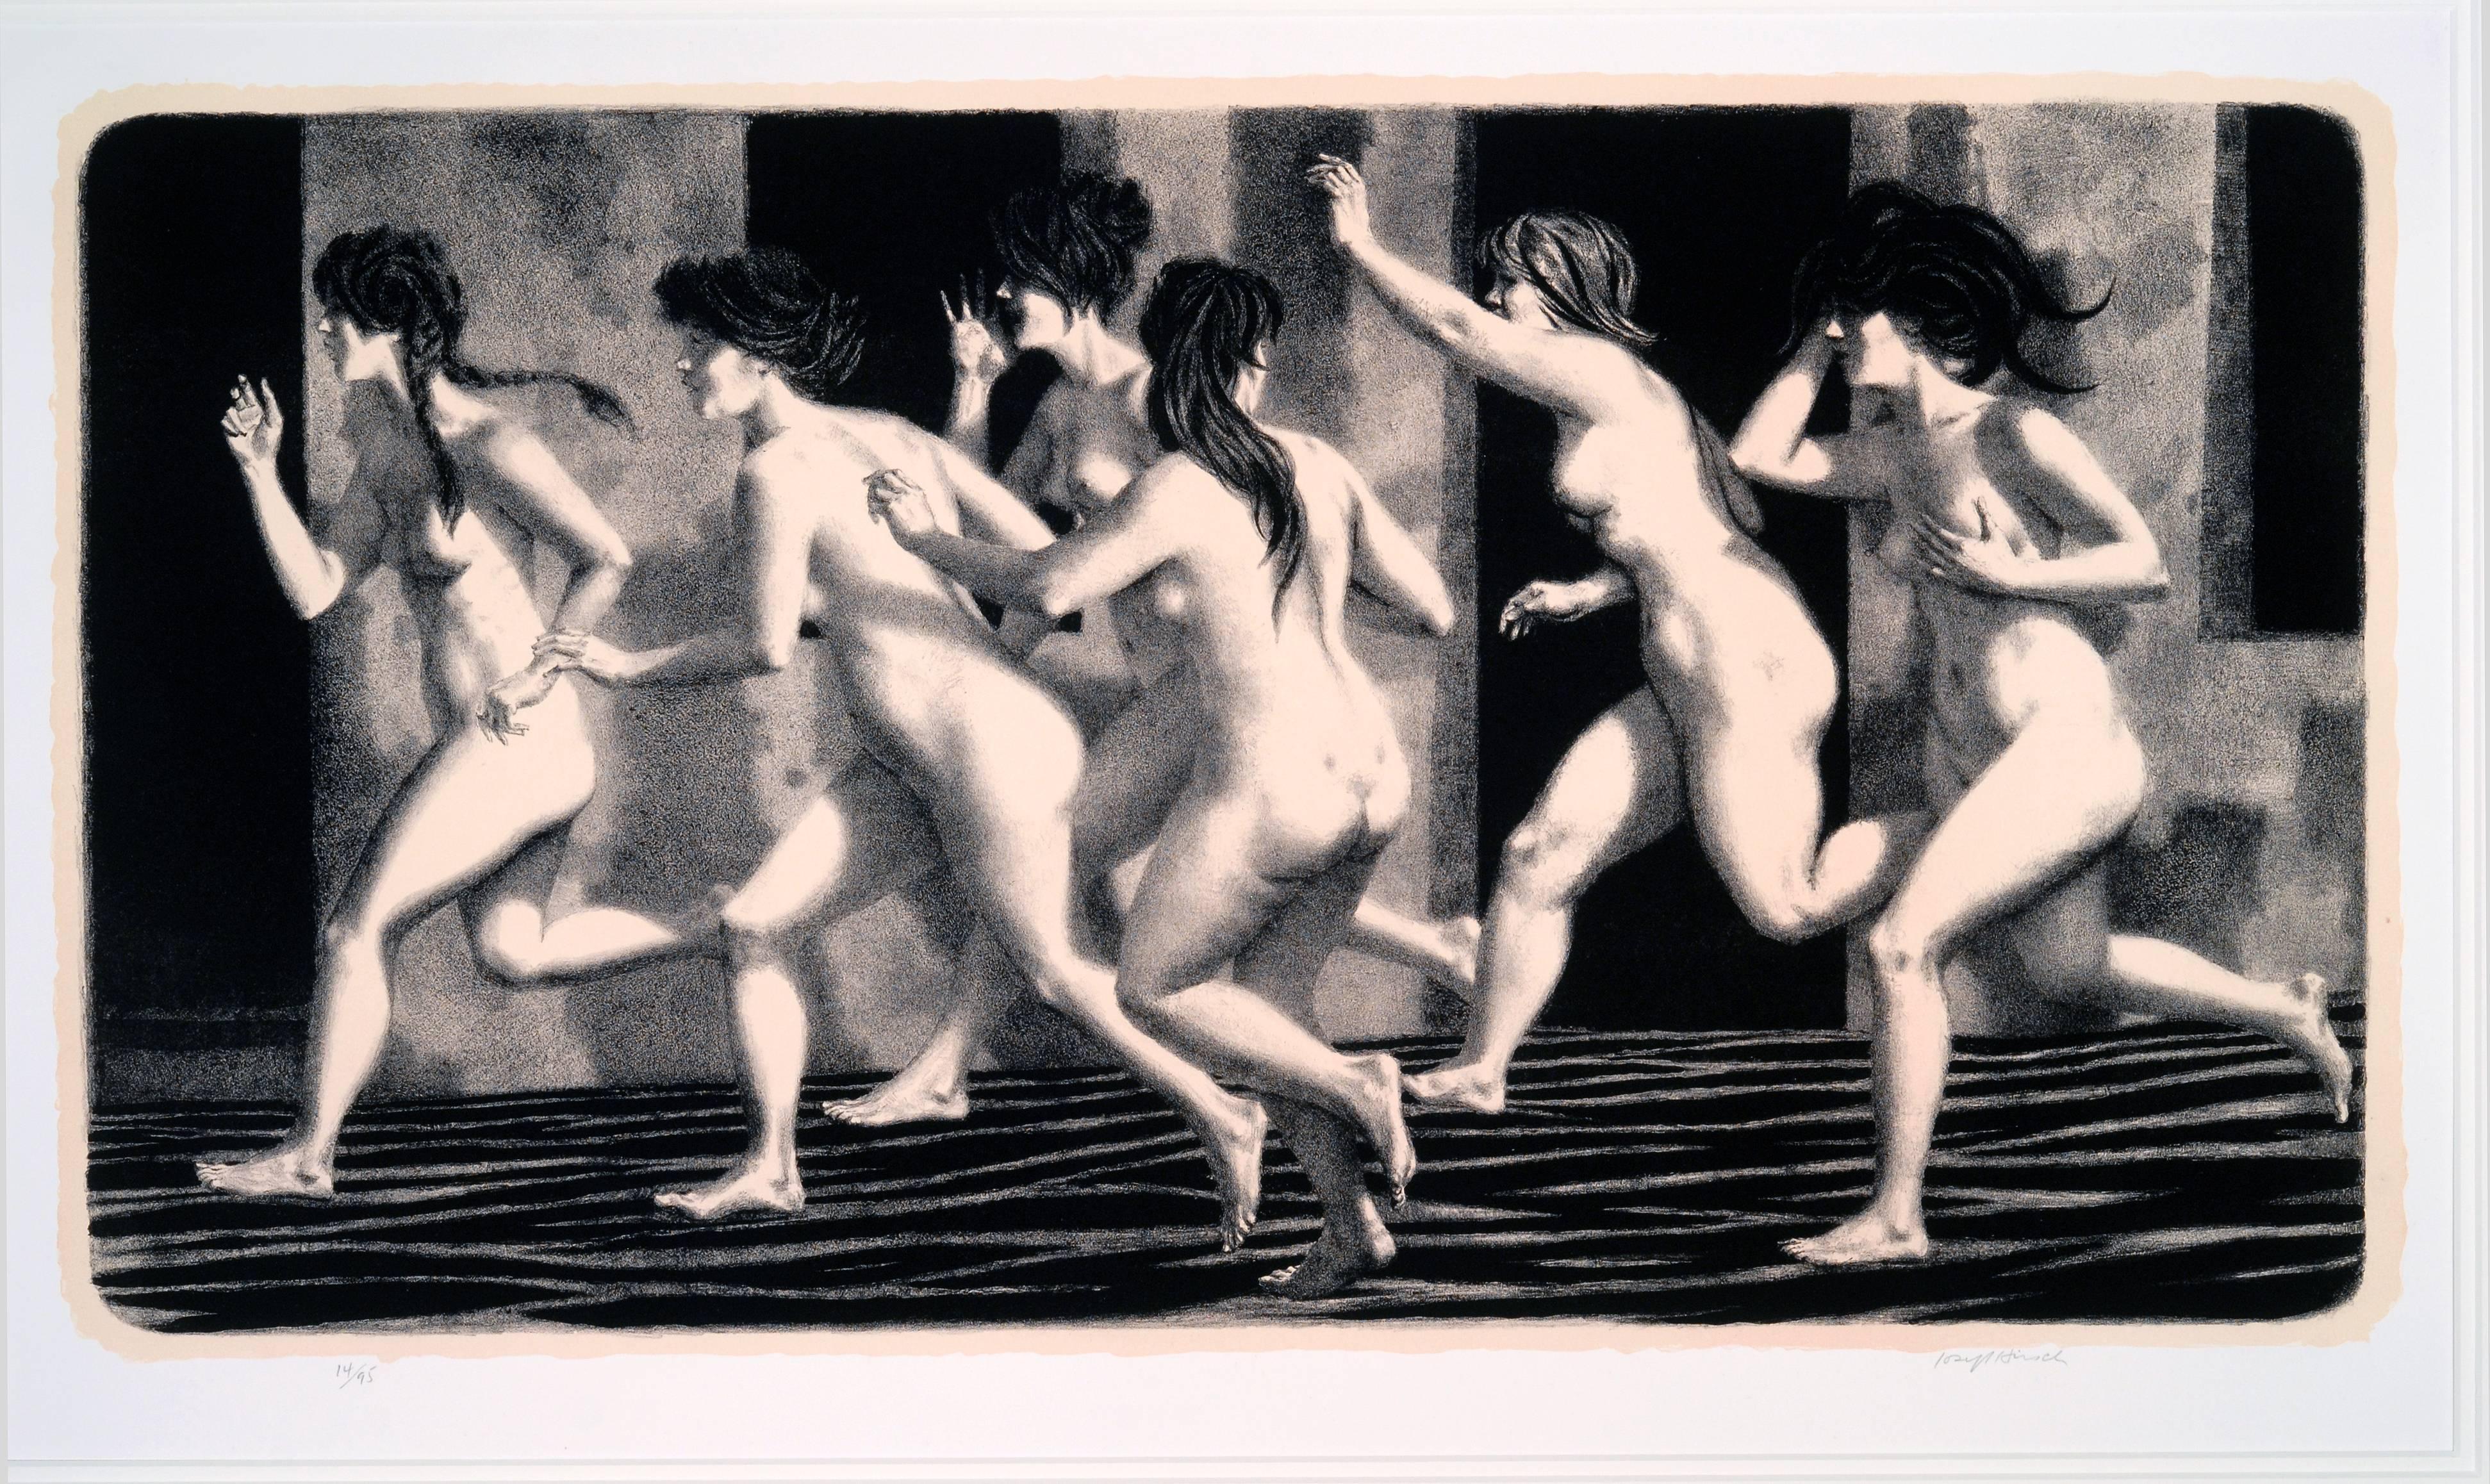  RUNNING WOMEN. - Print by Joseph Hirsch